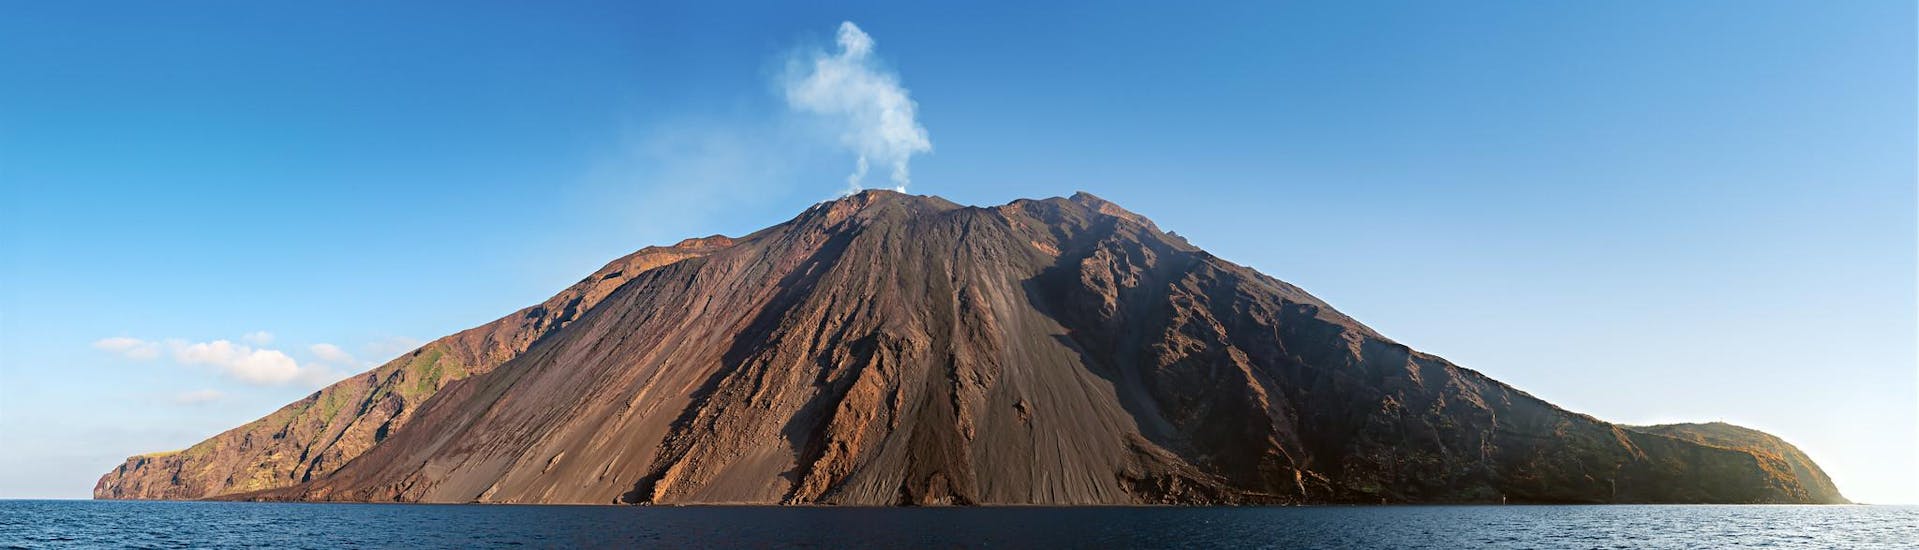 Partecipa a un tour del vulcano o fai un'escursione in cima al vulcano.